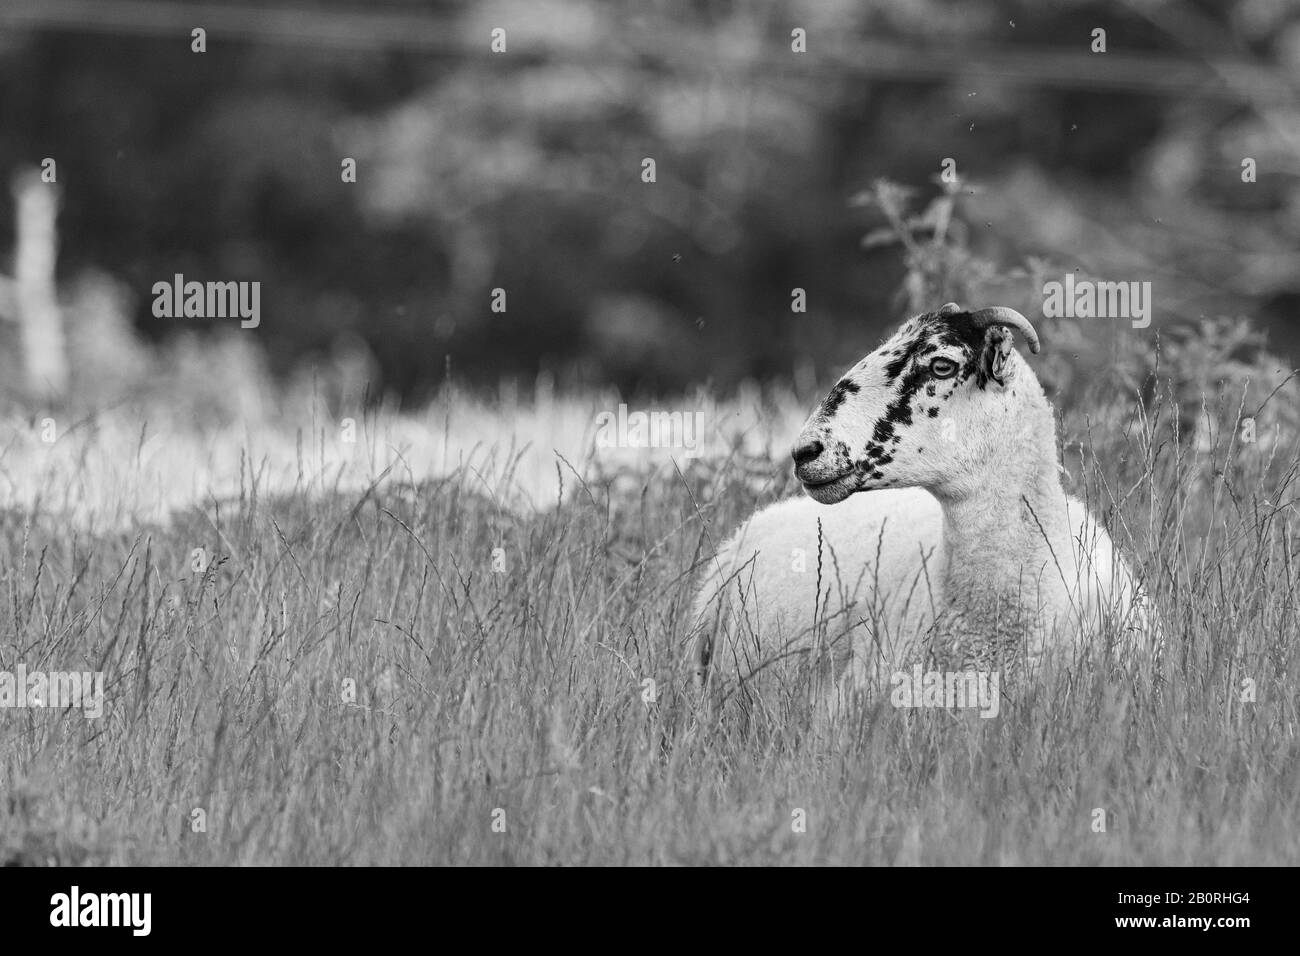 Una oveja sabia y vieja sentada en un prado en blanco y negro Foto de stock